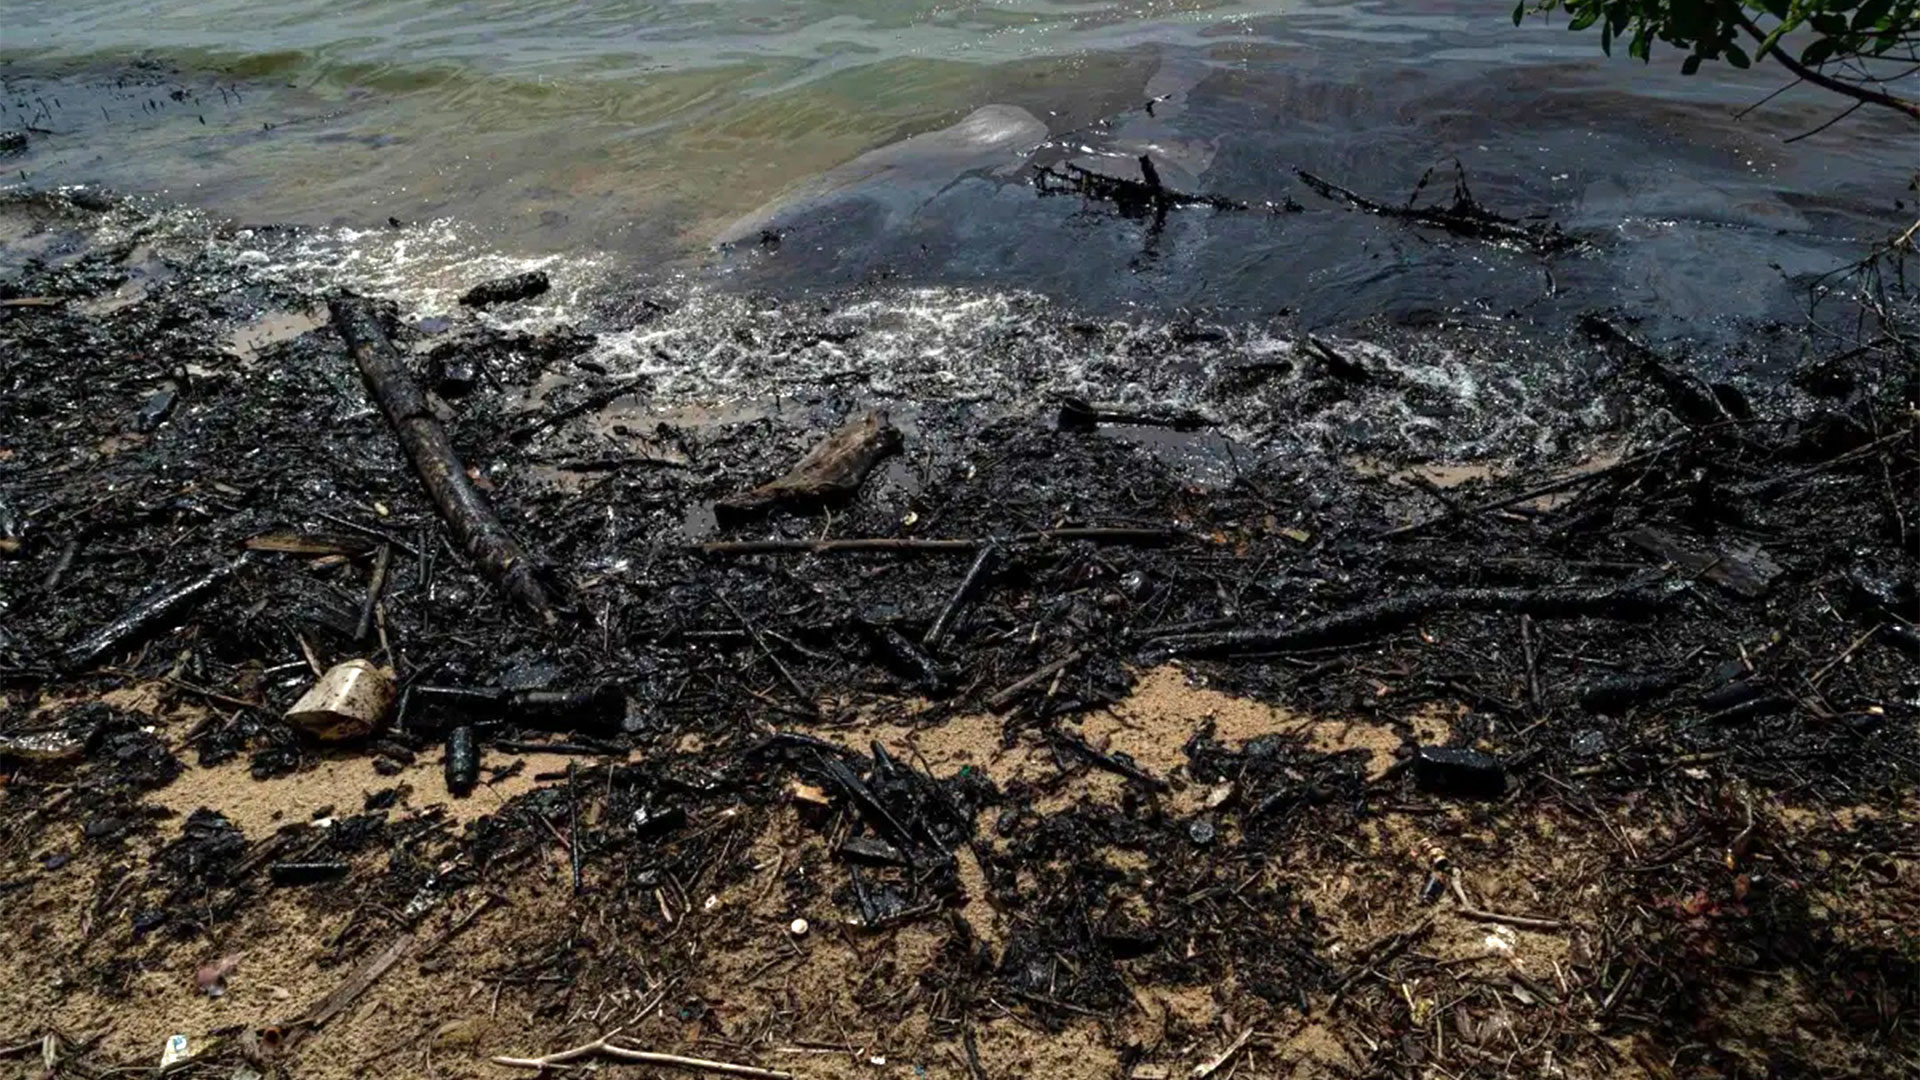 Las alteraciones o perturbaciones más importantes a lo largo de la costa venezolana son los derrames petroleros, y la contaminación por aguas servidas y desechos sólidos (EFE/MIGUEL GUTIÉRREZ/Archivo)